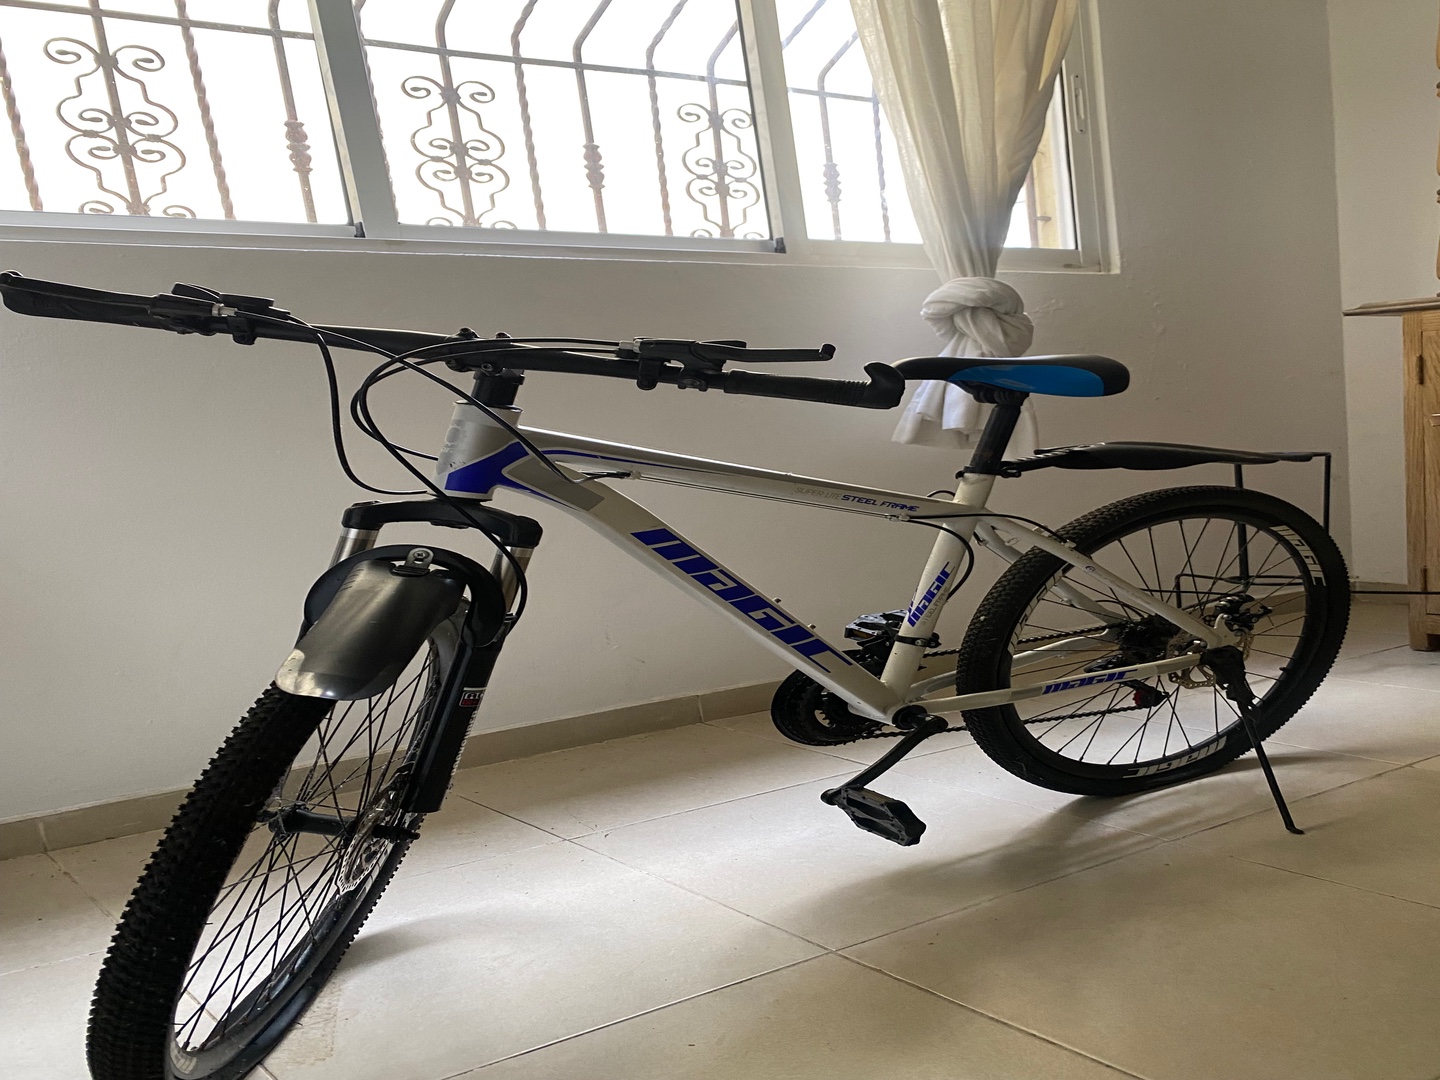 bicicletas y accesorios - Bicicleta aro 26 excelentes condiciones con accesorios ( casco y luces)